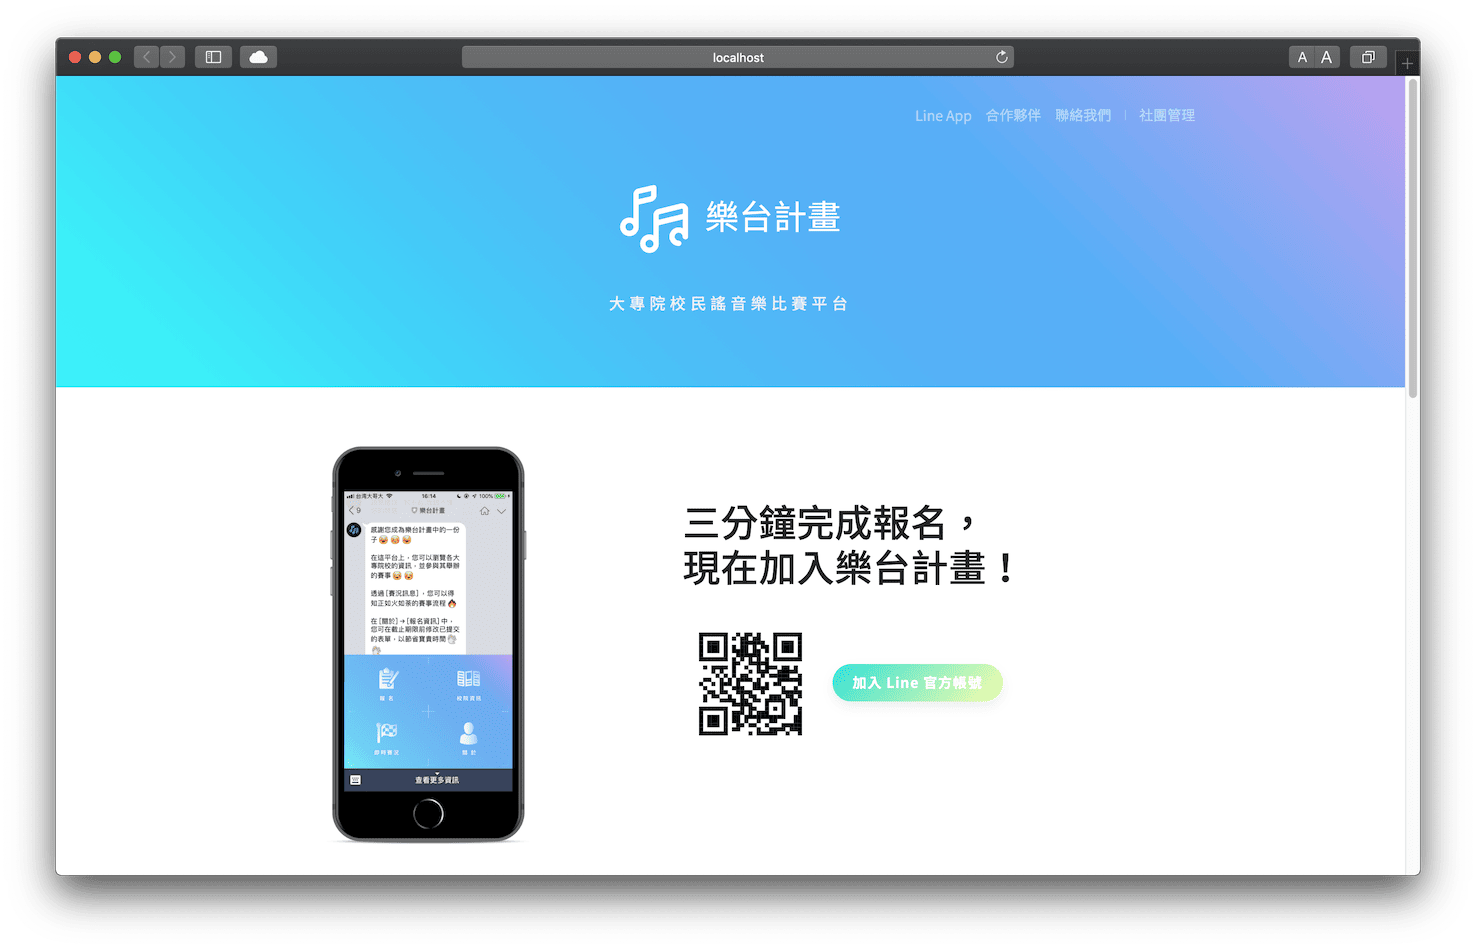 陽春的初版網站首頁